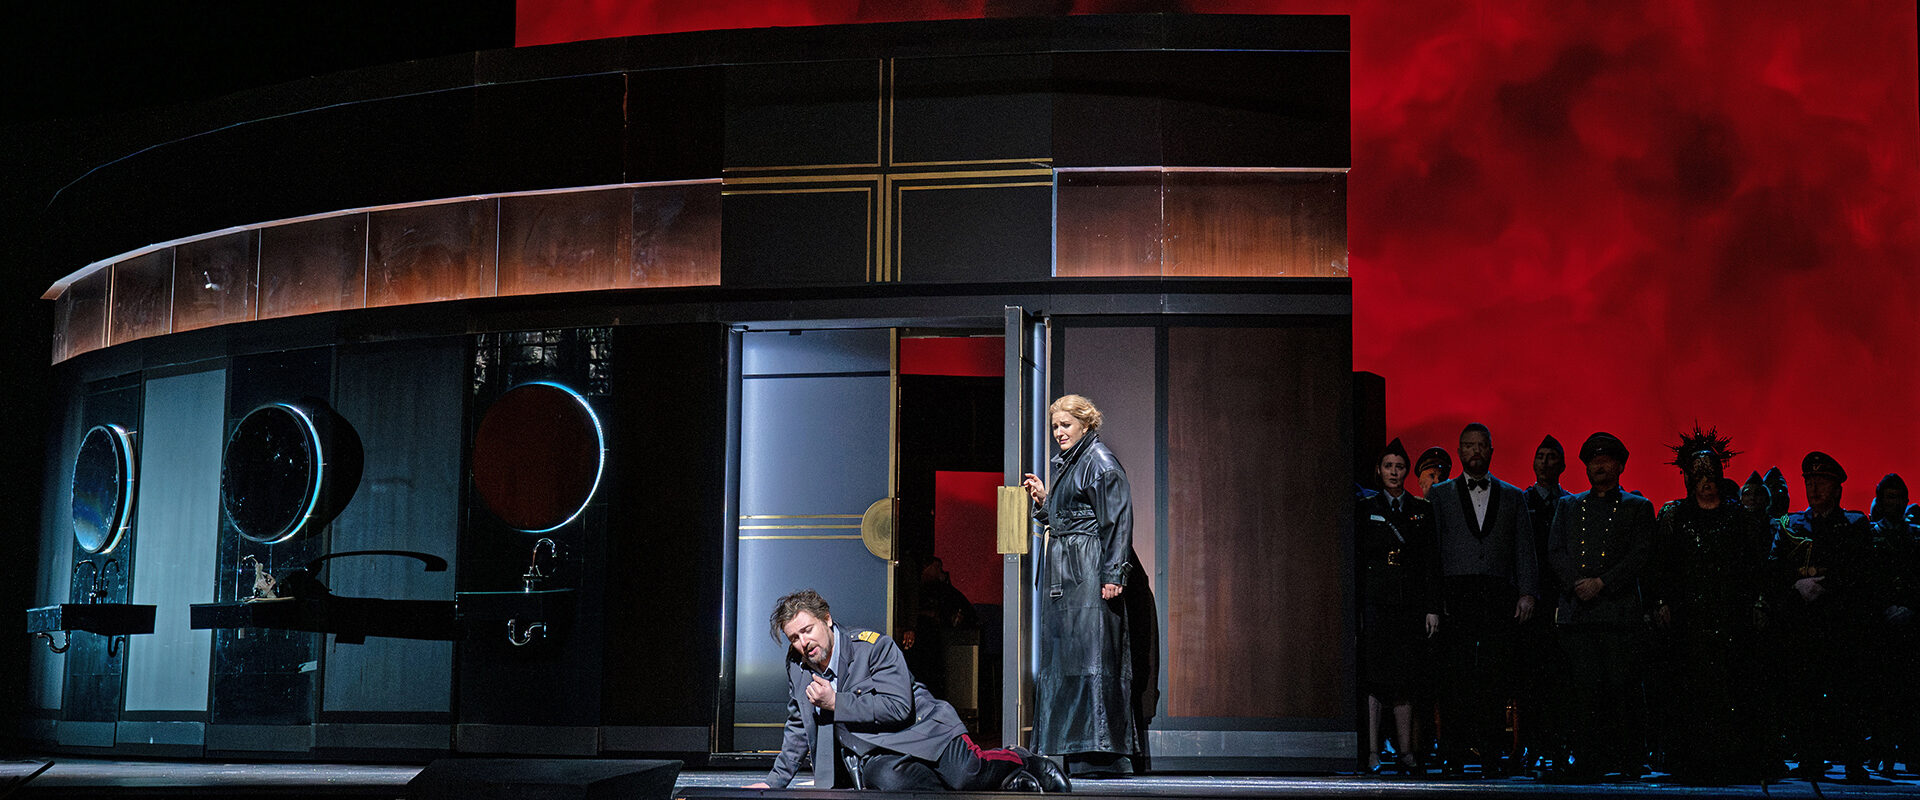 Verdi’s “La Forza del Destino” from the Met Opera in selected Polish theatres on March 9